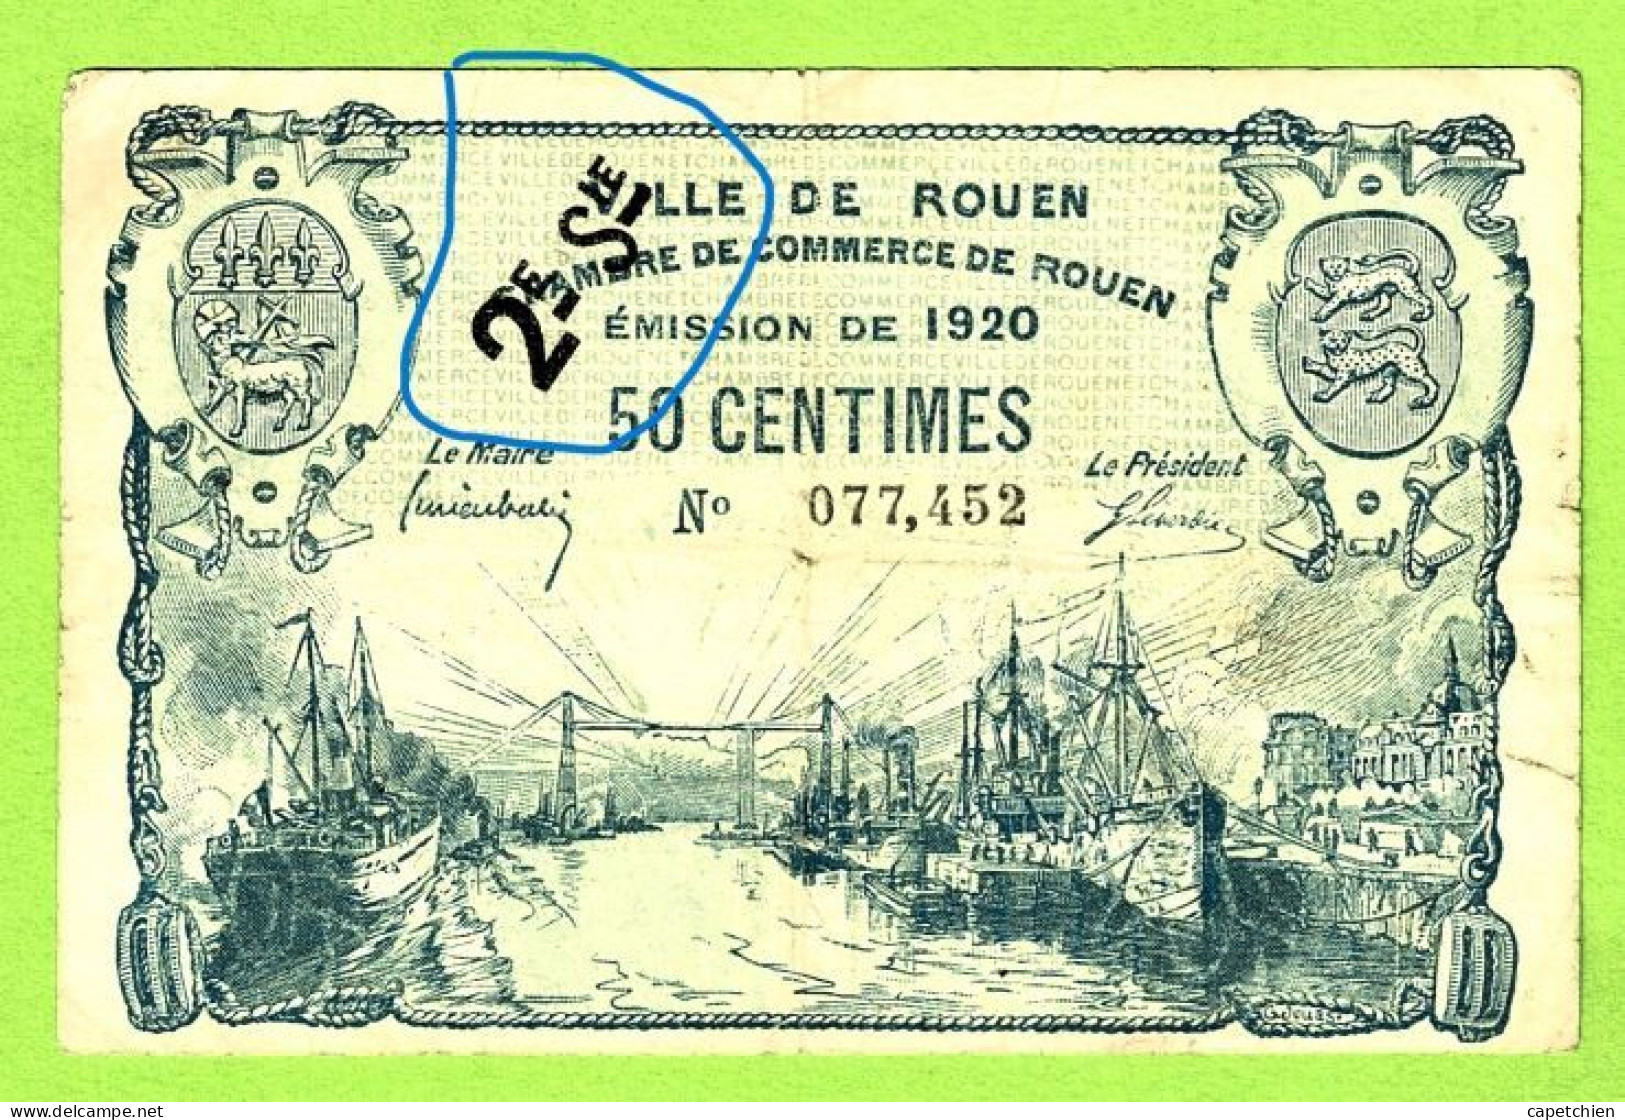 FRANCE / VILLE & CHAMBRE De COMMERCE De ROUEN / 50 CENTIMES  / EMISSION DE 1920 / SURCHARGE 2e Sie / N° 077452 - Handelskammer